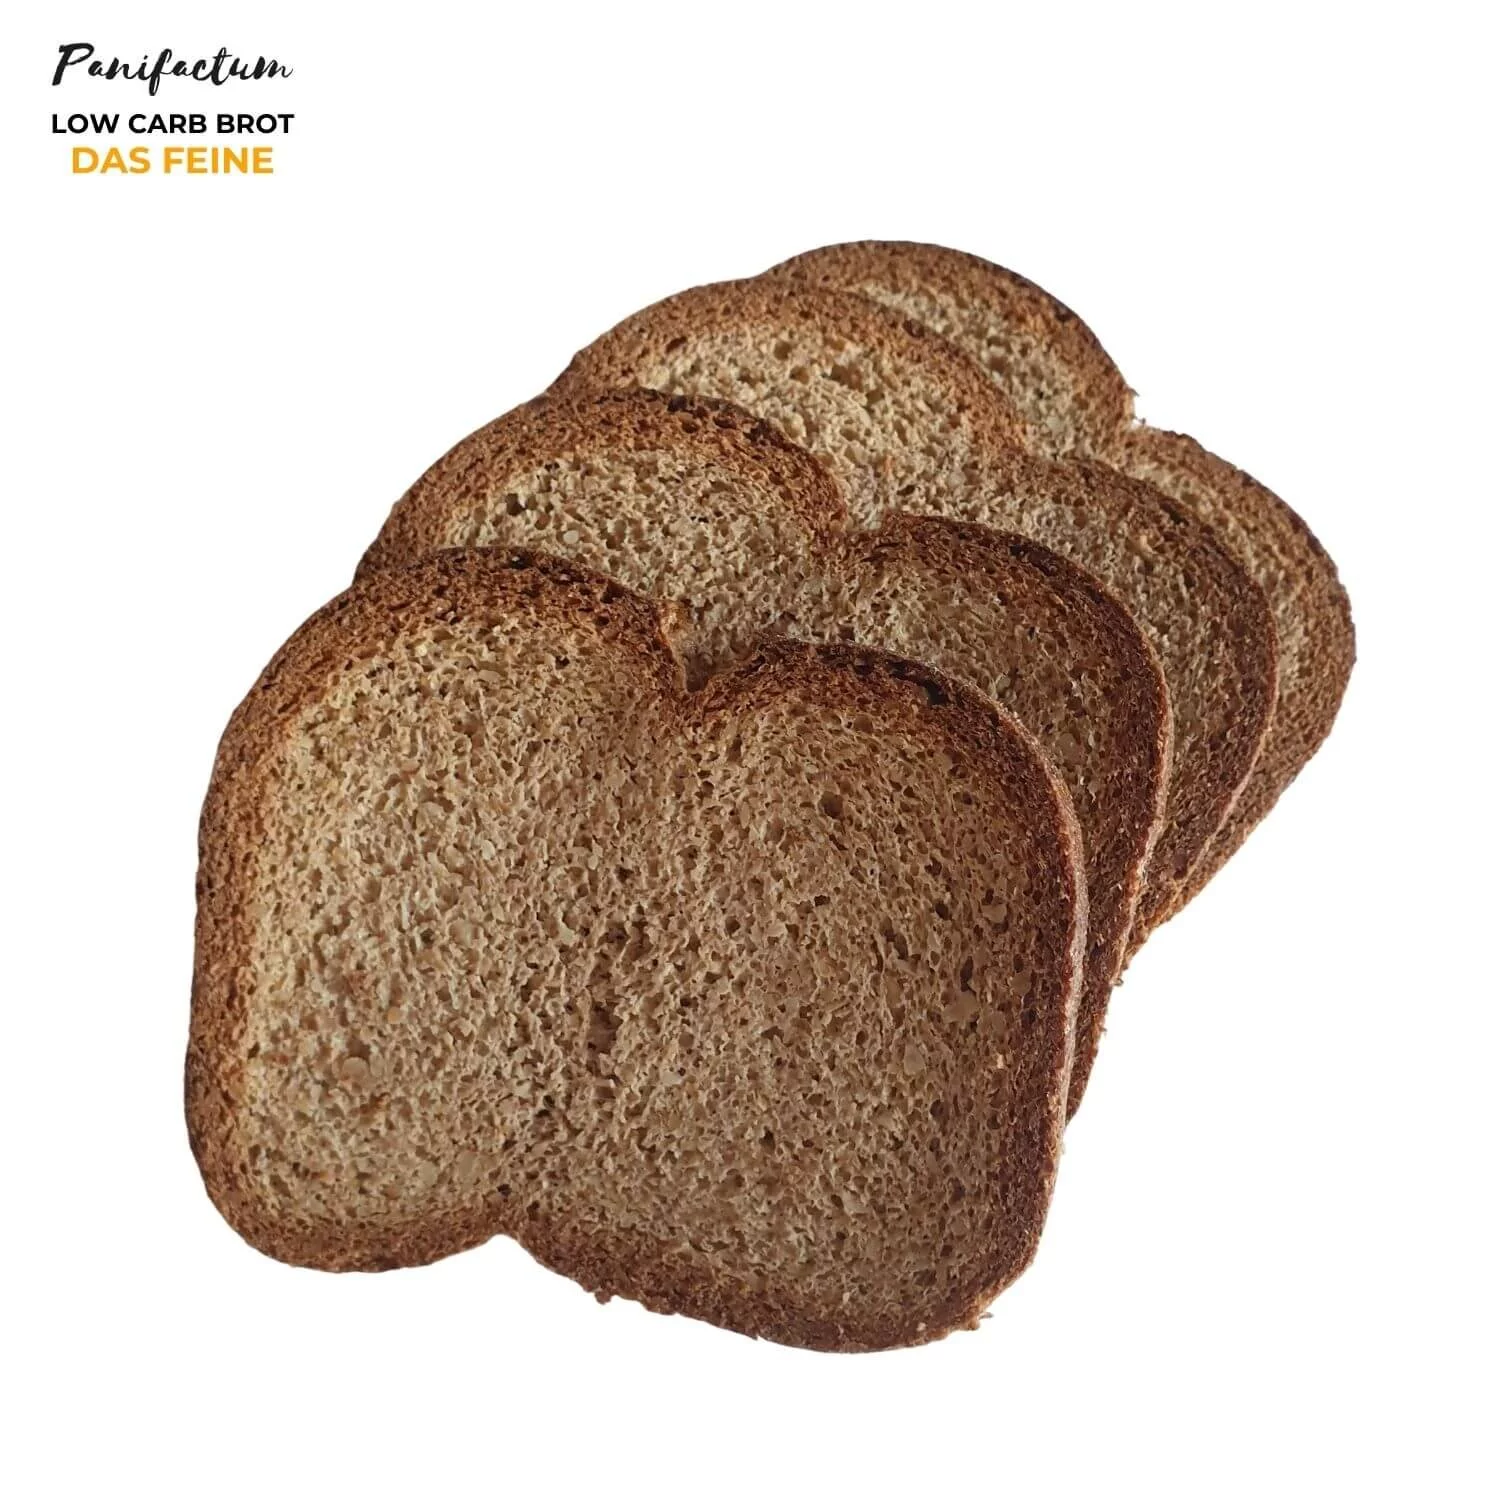 Low Carb Brot das Feine BIO *